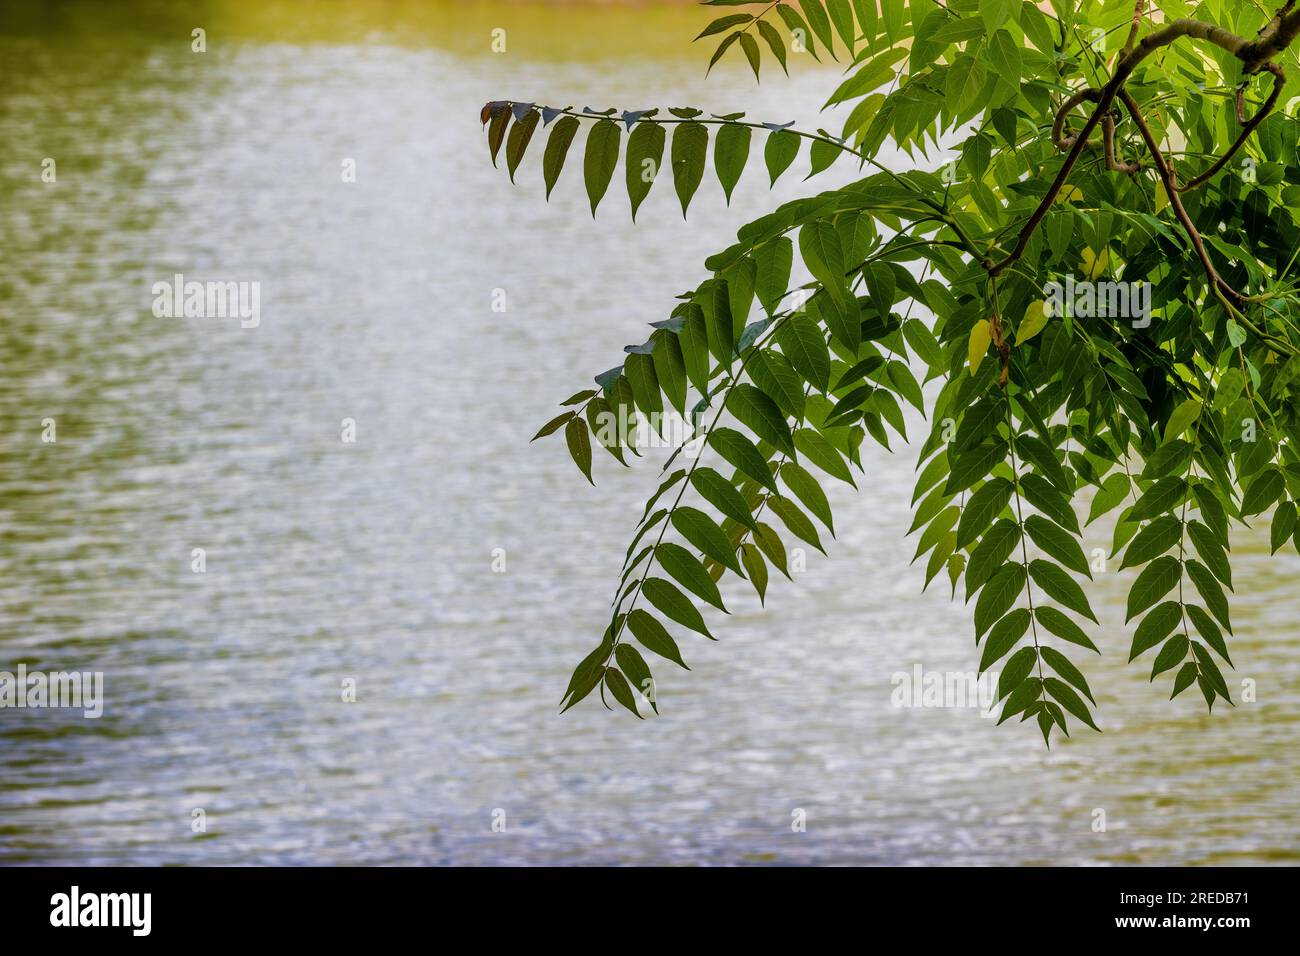 Im Steele Creek Park in Bristol, Tennessee, USA, könnt ihr euch einen Baum voller Blätter aus nächster Nähe ansehen Stockfoto